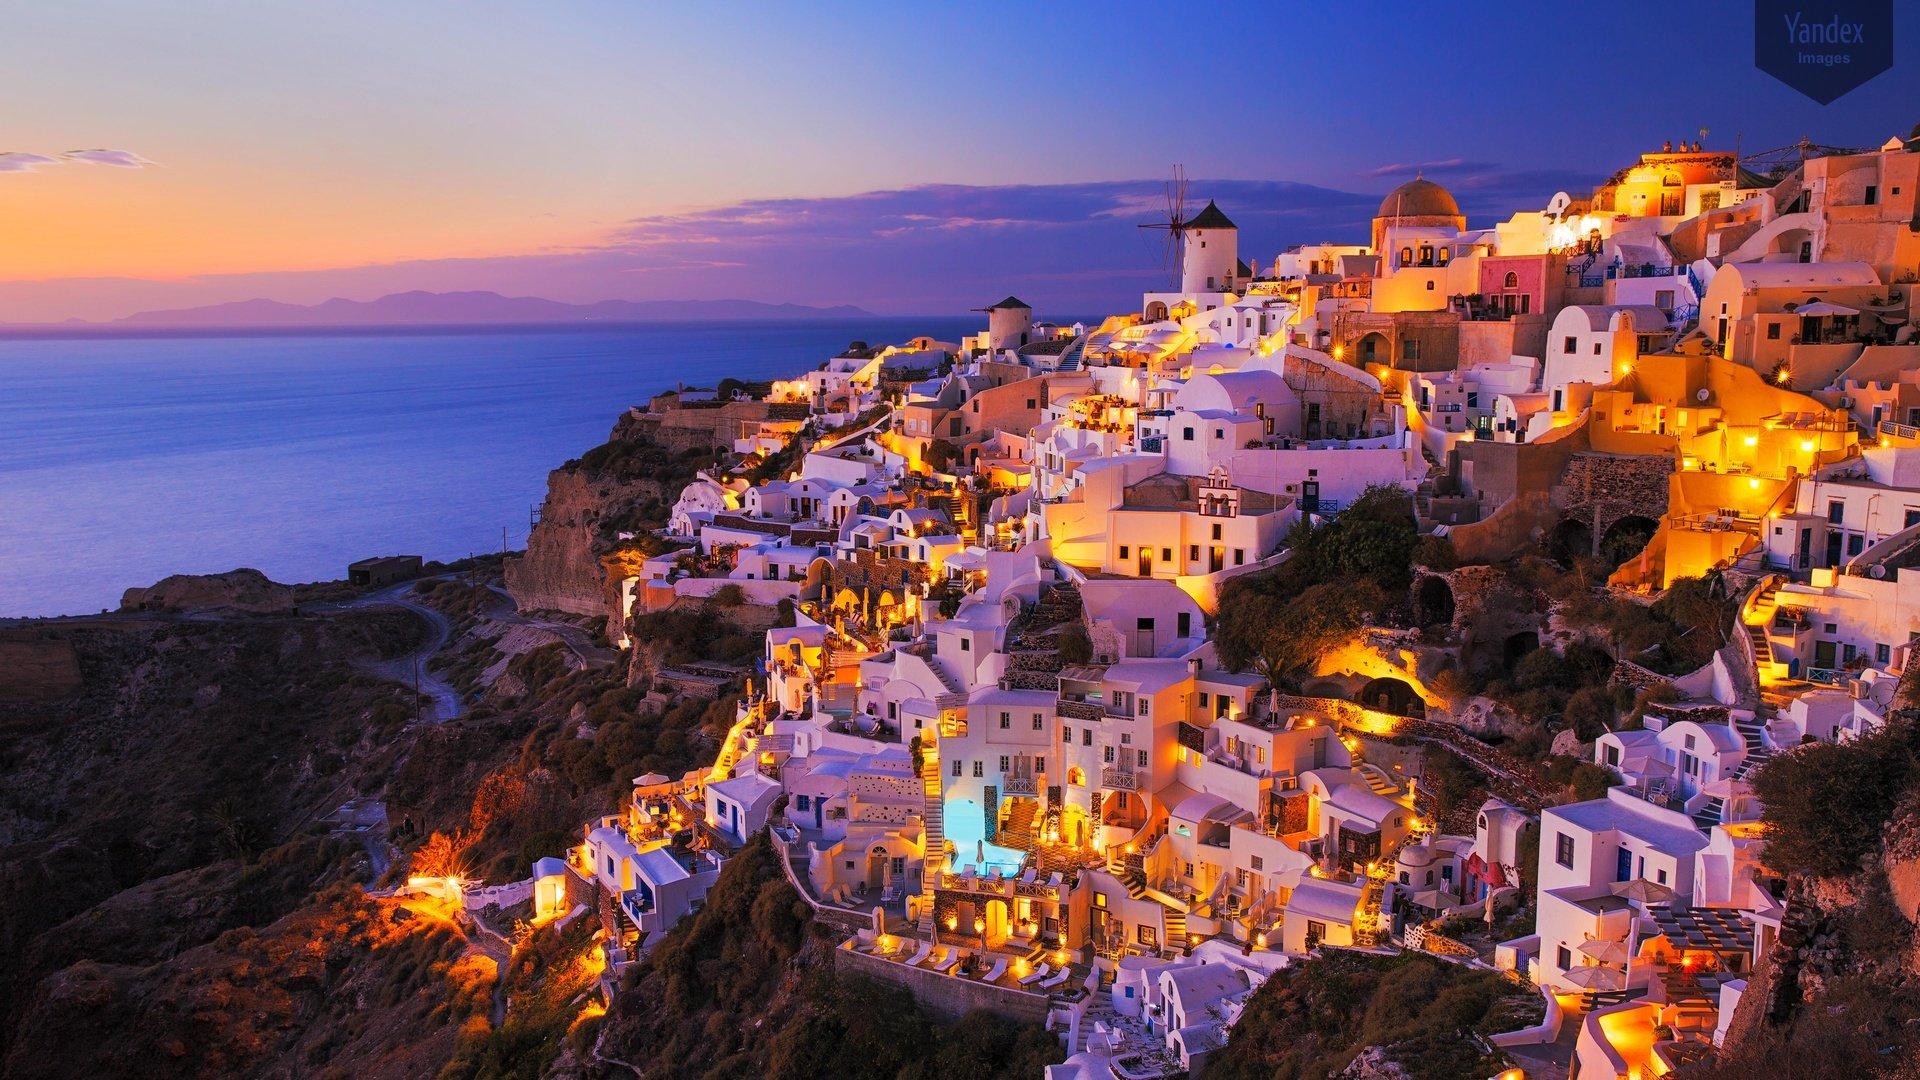 Hy vọng những hình ảnh tuyệt đẹp về Hy Lạp sẽ đưa bạn tới những trải nghiệm đầy kỳ diệu, tình cảm và sự phiêu lưu. Với đất nước có lịch sử văn hóa bất tận như Hy Lạp, bạn sẽ chắc chắn không bao giờ hối tiếc về việc khám phá nó.